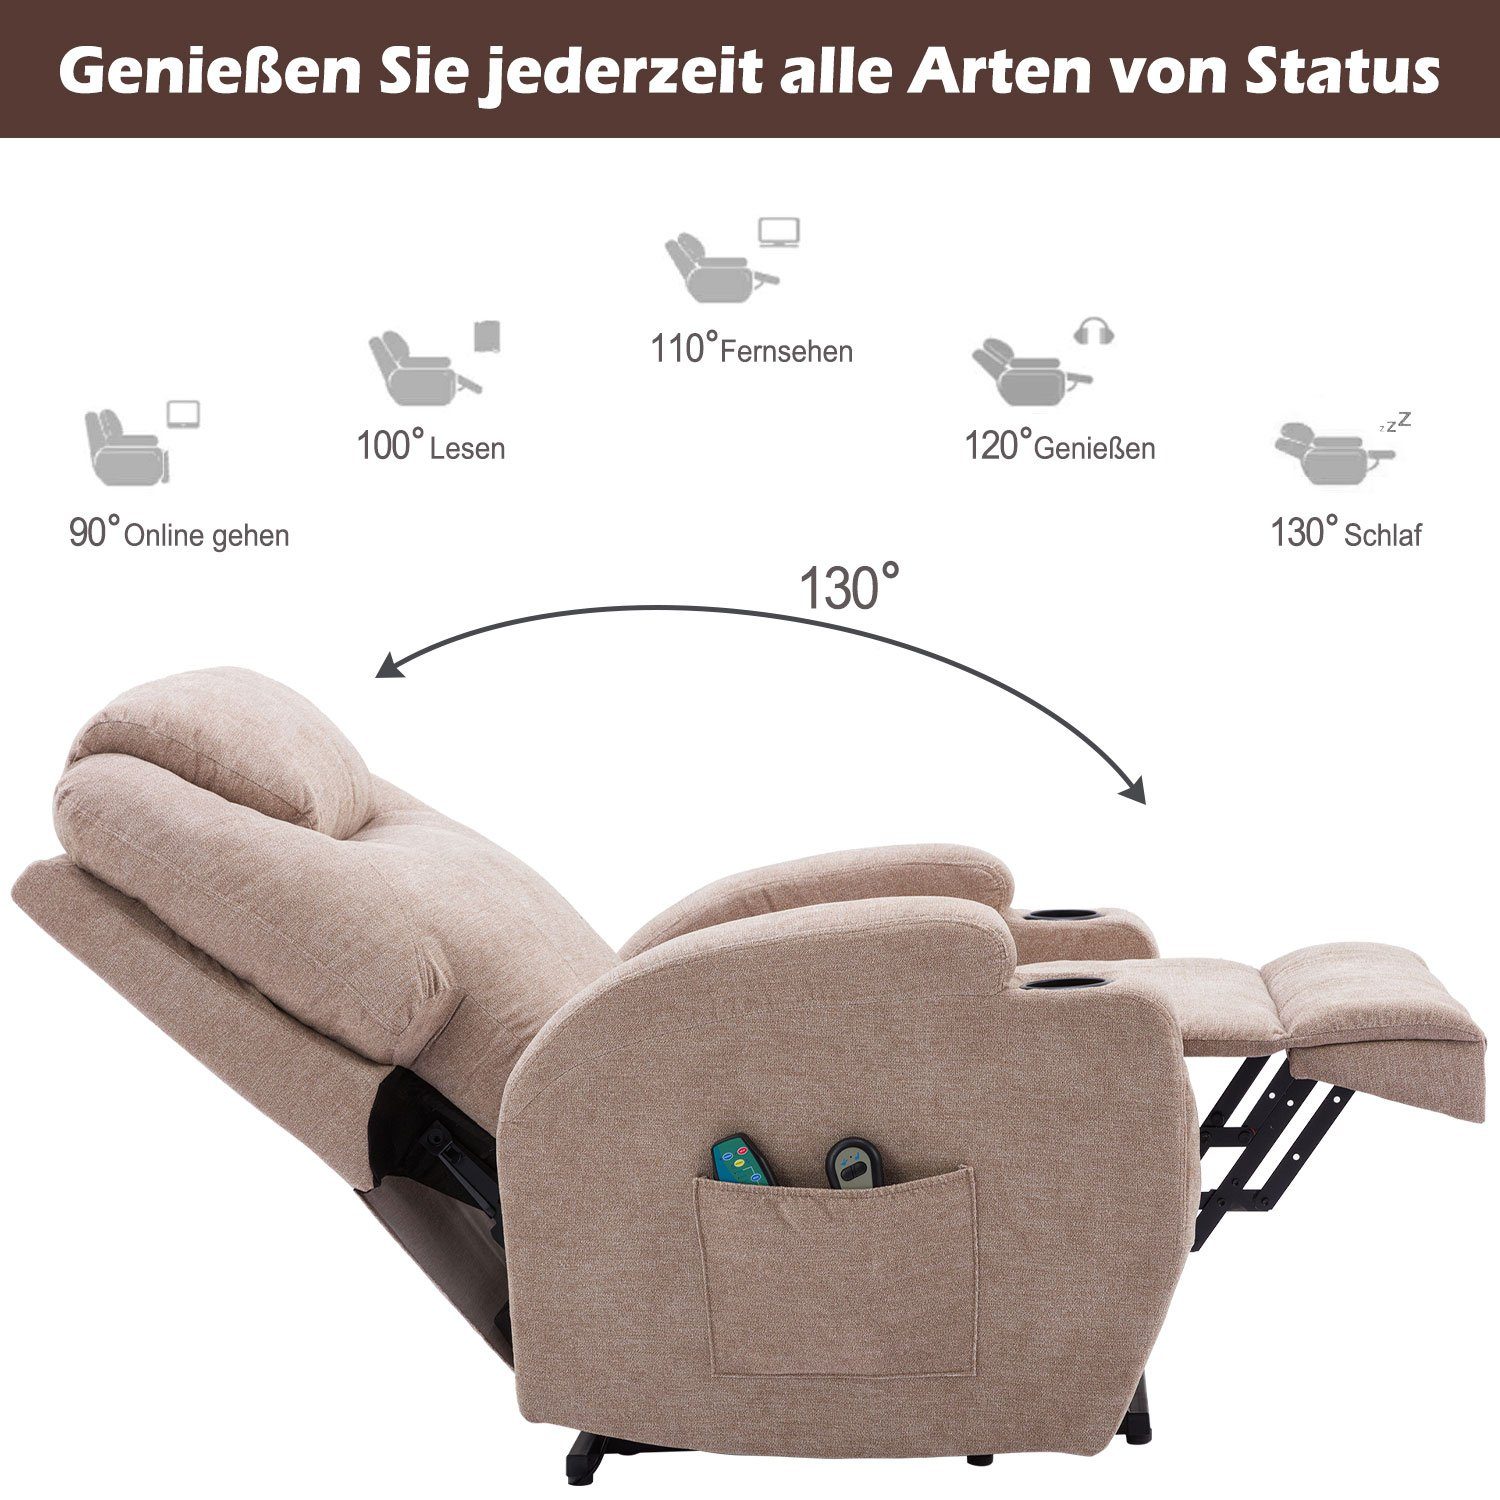 und Fernbedienung USB mit Massagesessel Hellbraun Merax Vibrationsmassage, TV-Sessel Wärmefunktion und relaxfunktion,